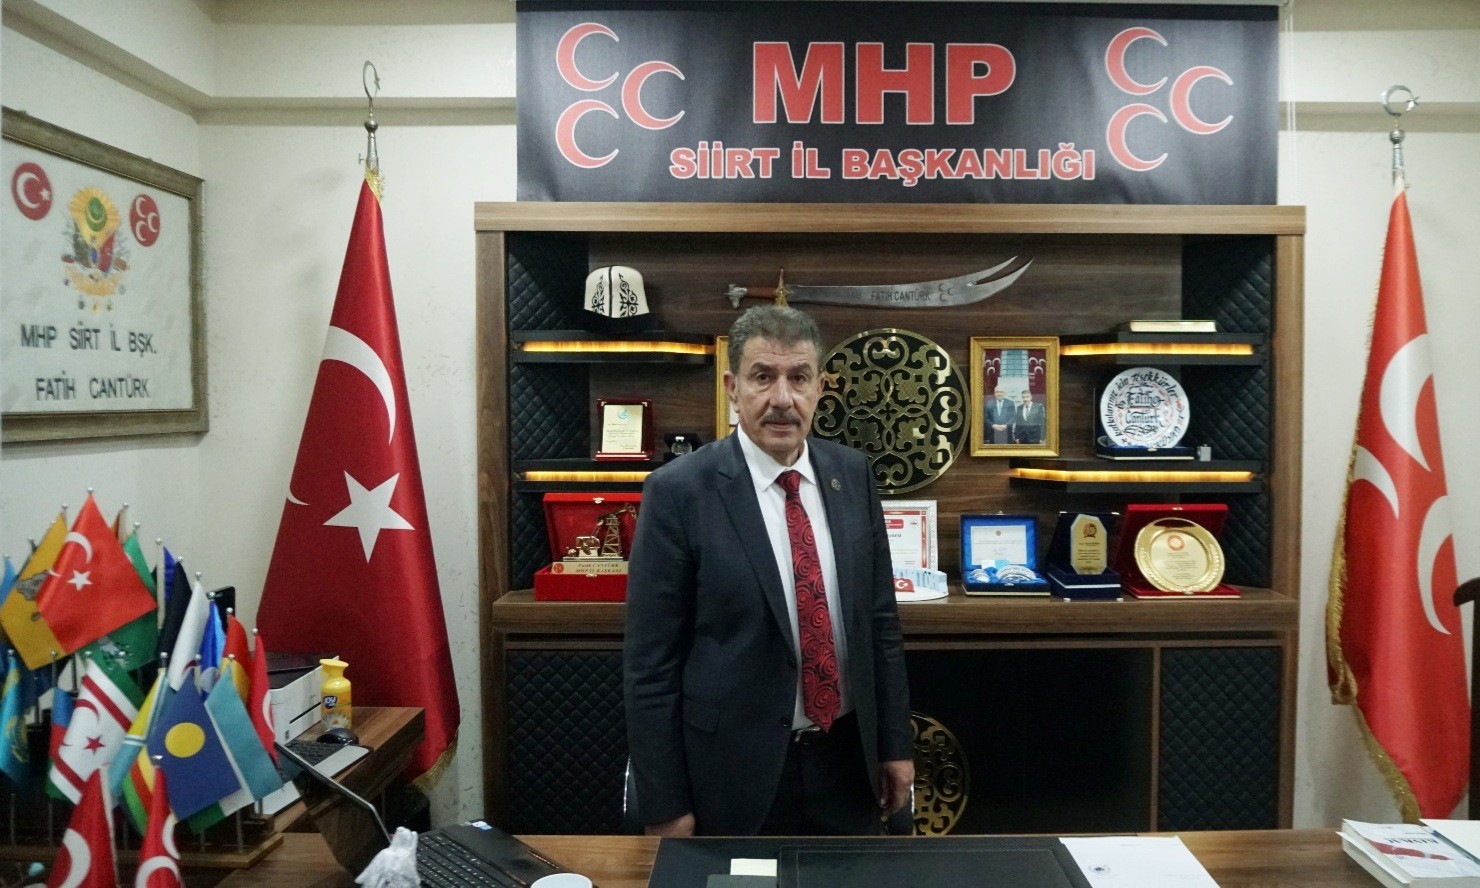 MHP Siirt İl Başkanı Cantürk: “Karşınızda eski Türkiye yok, haddinizi bilin”